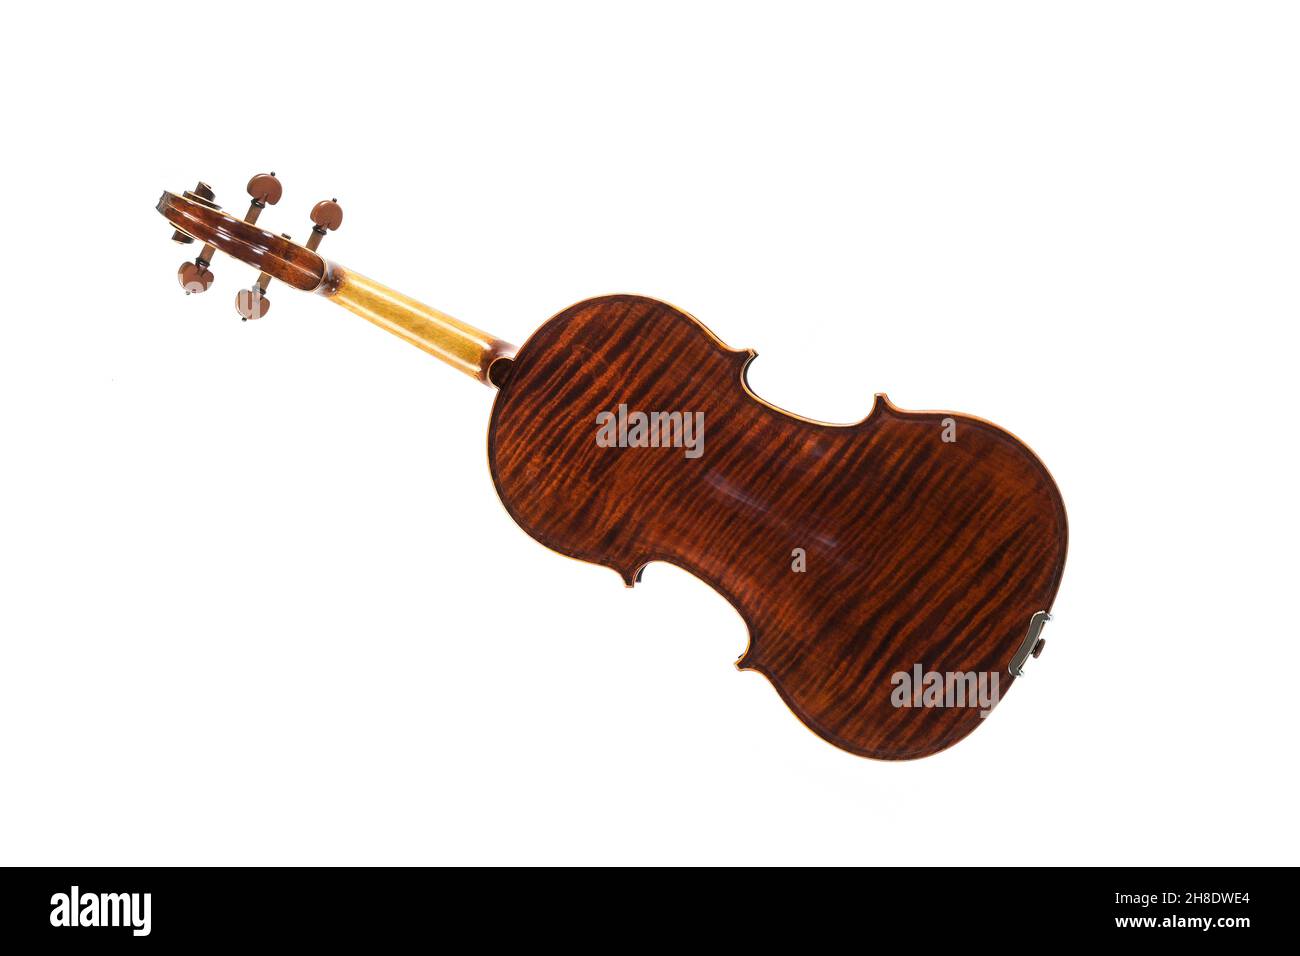 Viola von hinten mit Holzmaserung, Streichmusikinstrument aus der Familie der Gamben, verwendet in Streichquartett, Kammermusik und Sinfonieorbrust Stockfoto